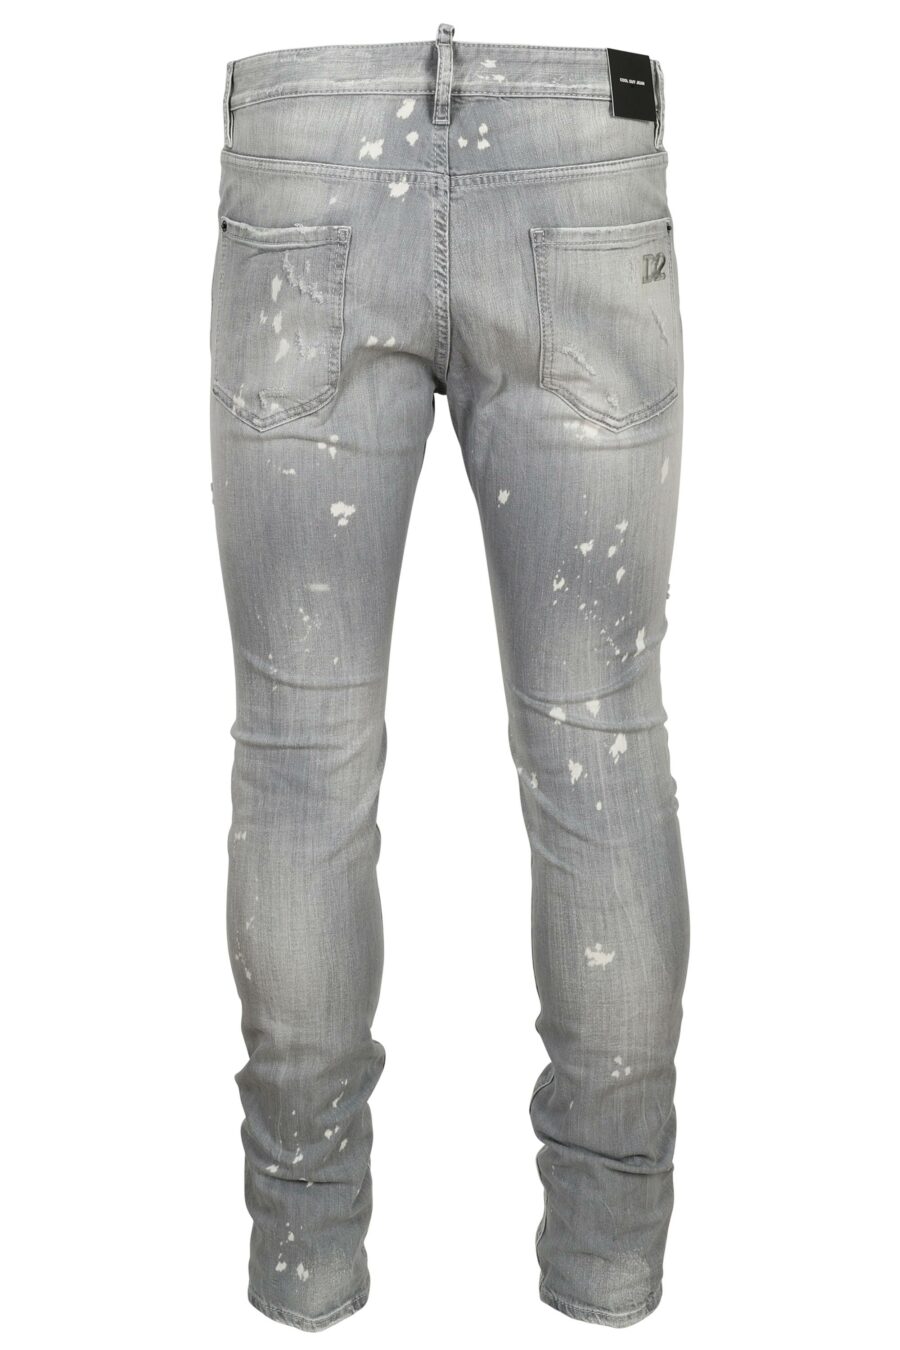 Pantalón vaquero gris "cool guy jean" con pintura blanca y rotos - 8054148474218 1